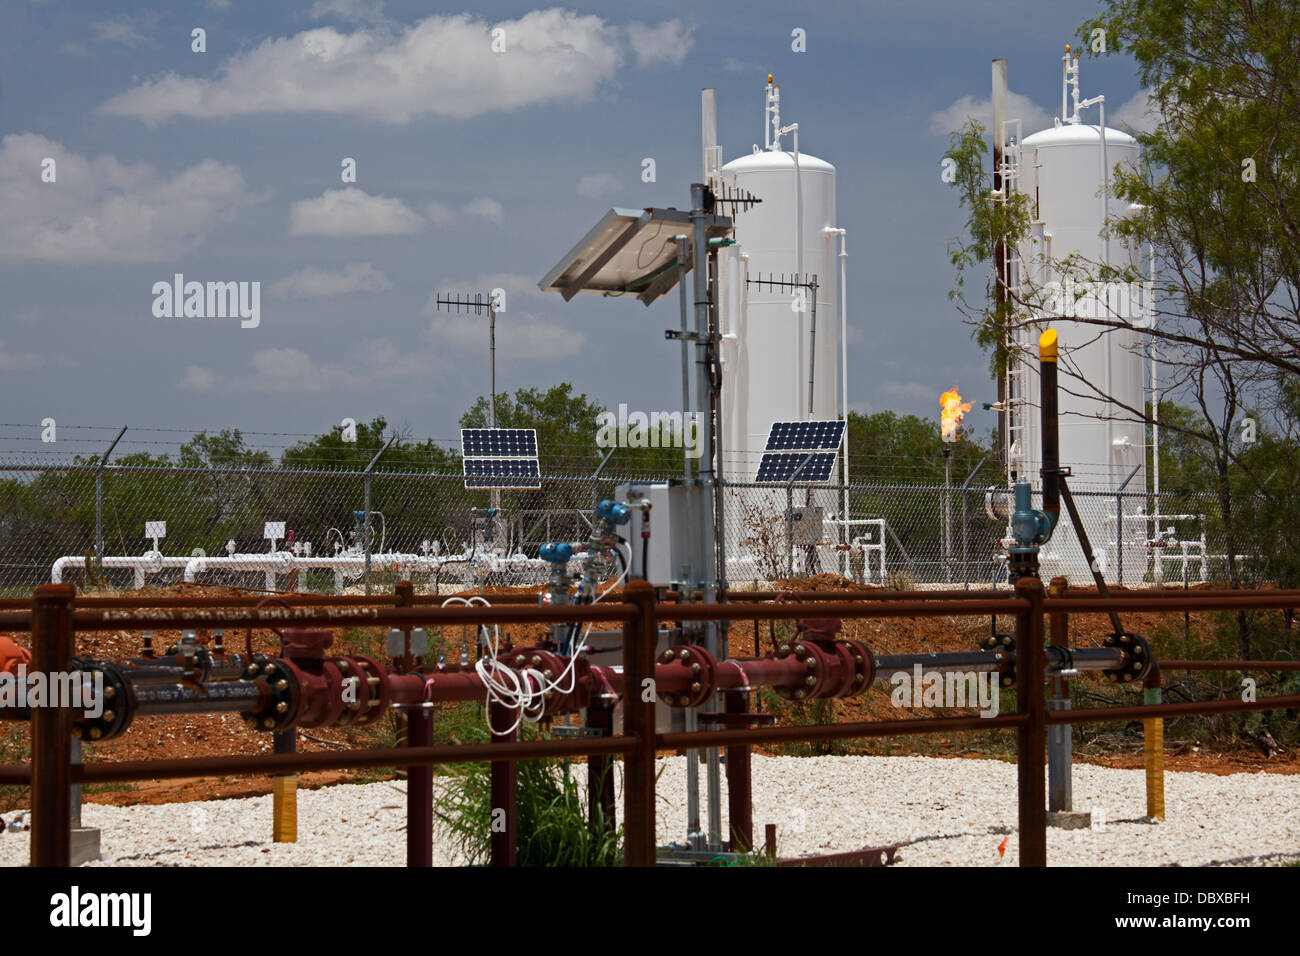 Millett, Texas - Erdgas wird verbrannt, bei einer Anlage in Eagle Ford Shale, eine Fläche von intensiven Öl- und Gasproduktion. Stockfoto